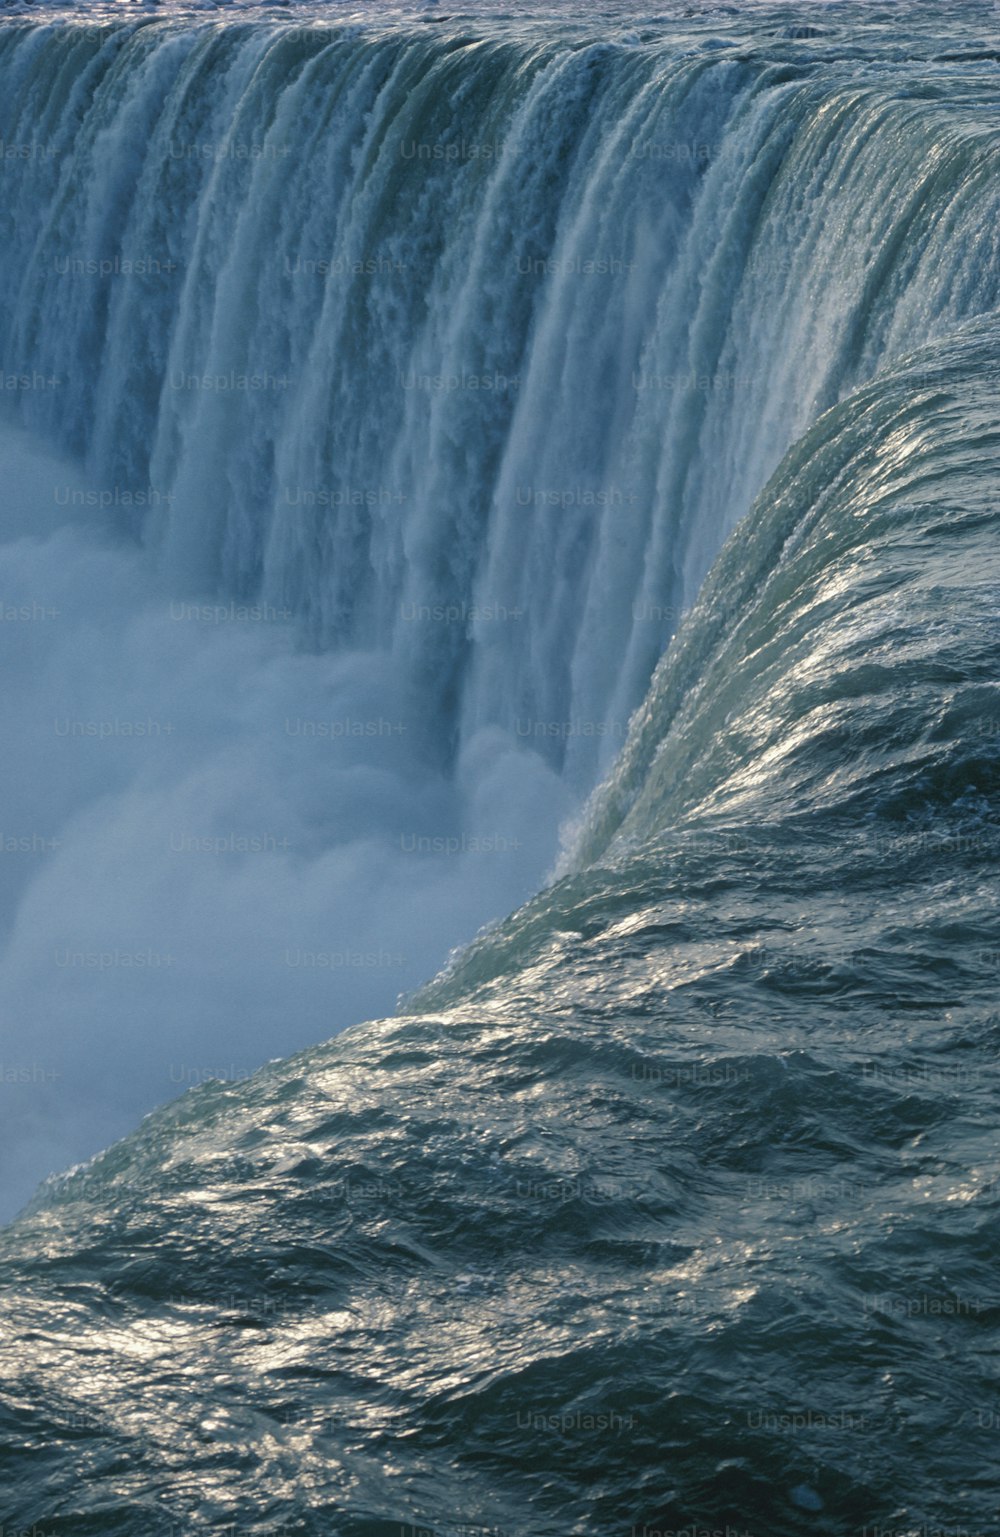 Un homme sur une planche de surf au sommet d’une grande cascade